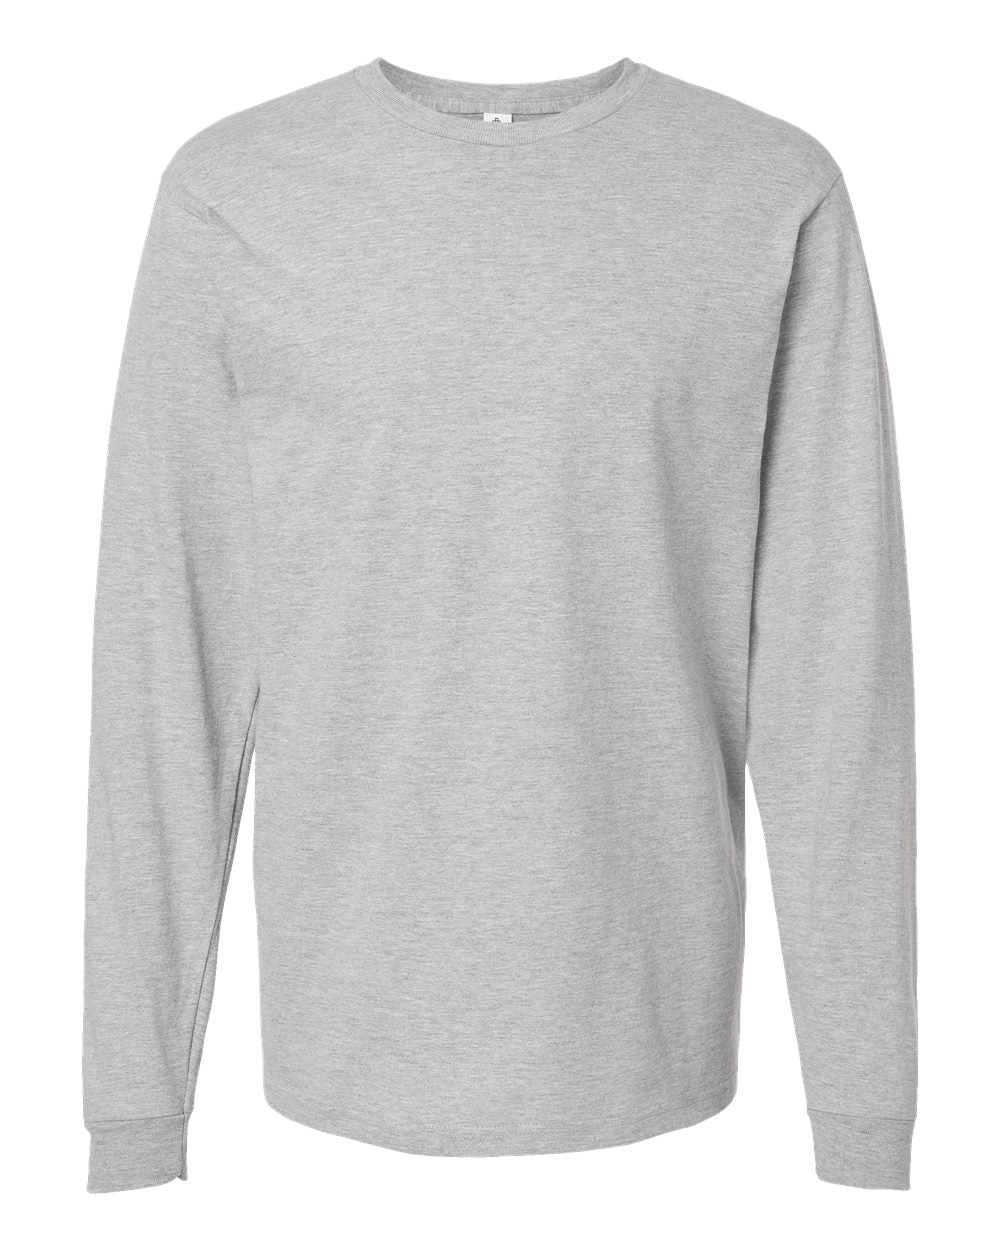 Tultex - Unisex Heavyweight Jersey Long Sleeve T-Shirt - 291